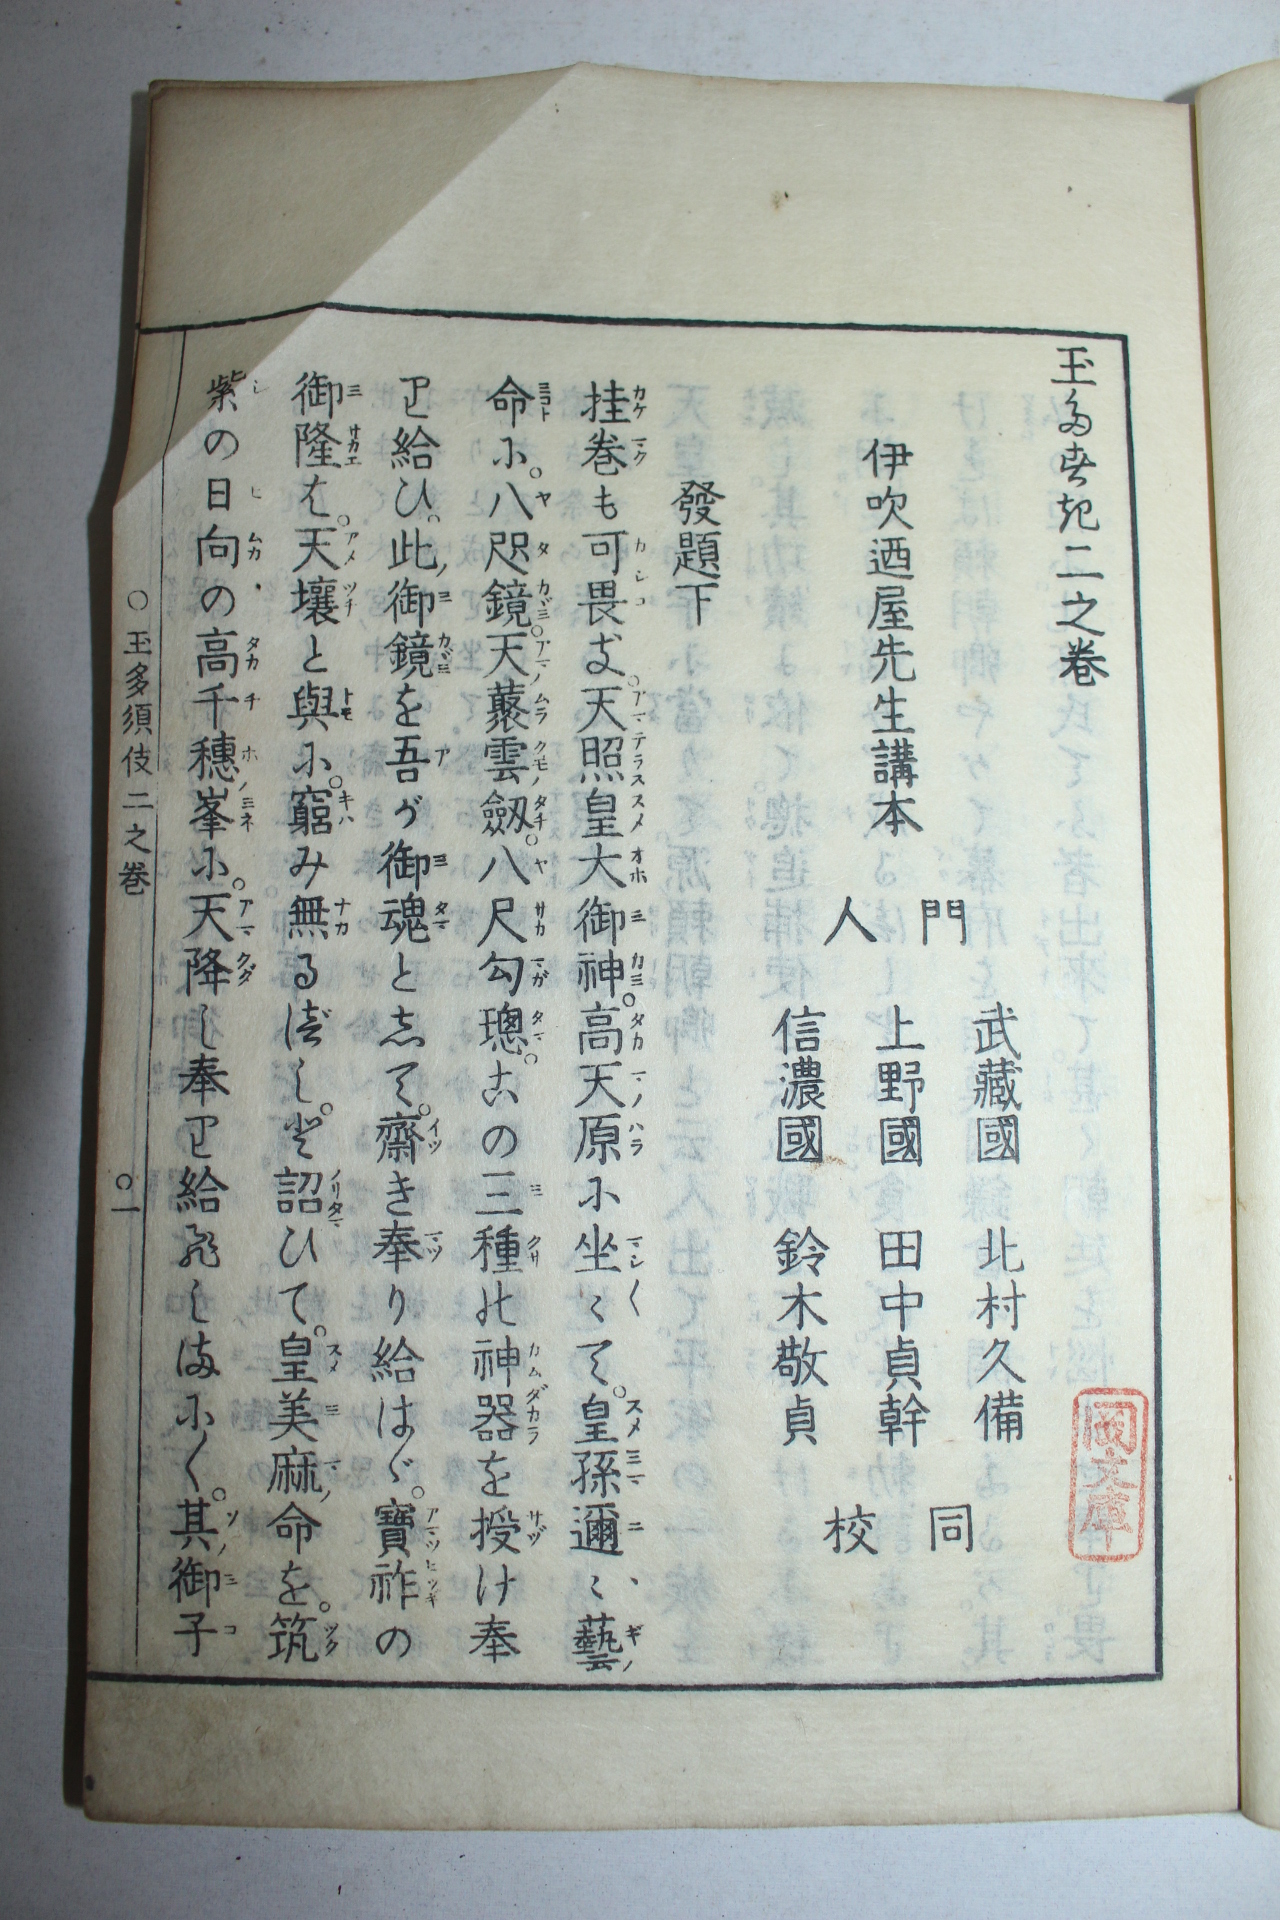 에도시기 일본목판본 옥다수기(玉多須伎) 8책